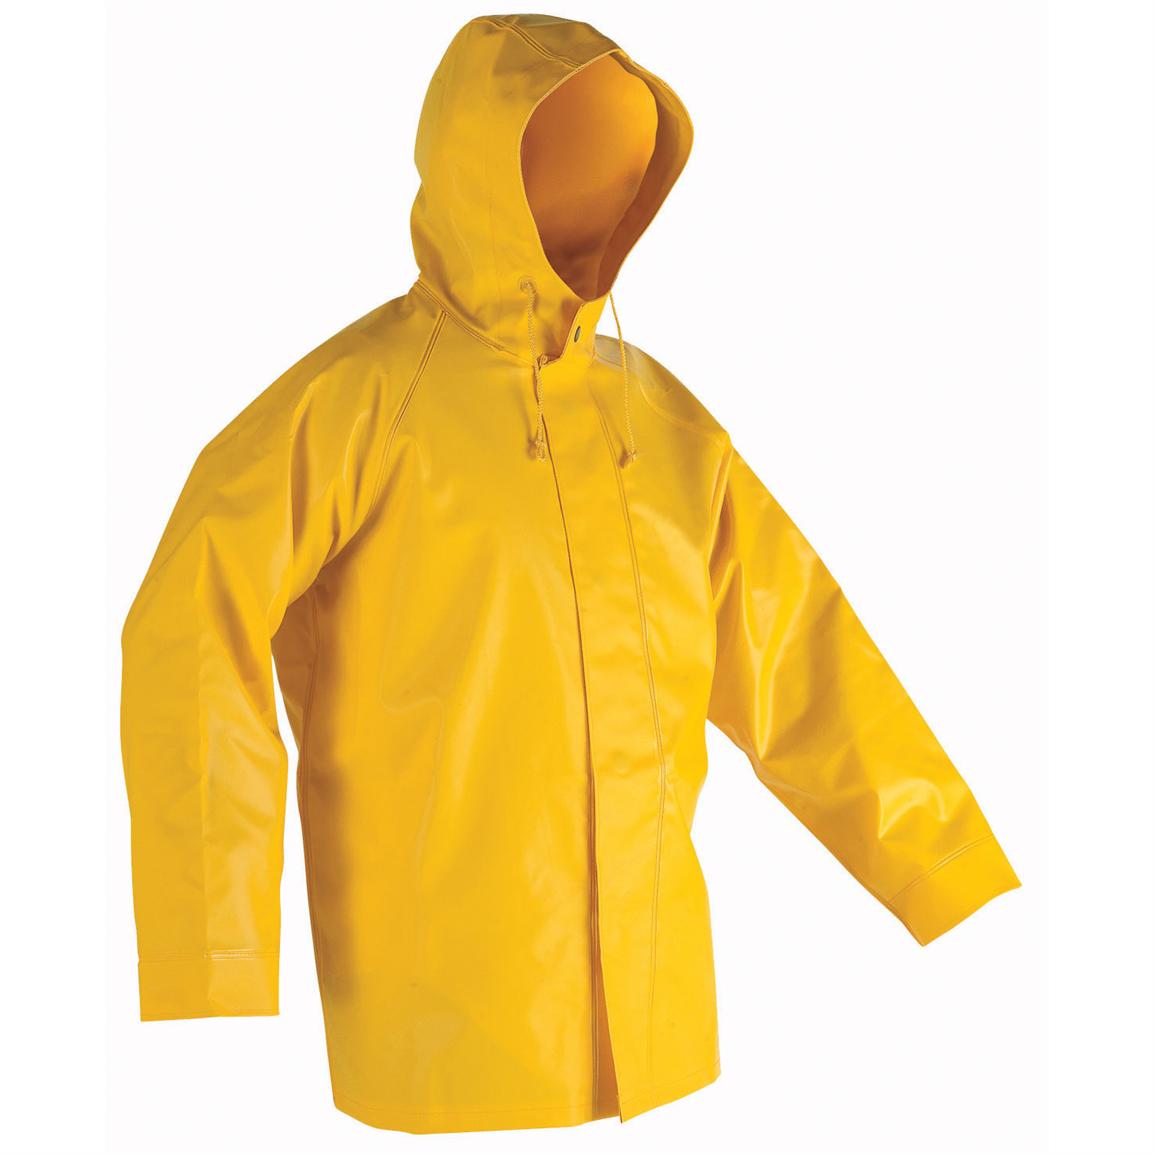 clipart coat waterproof jacket